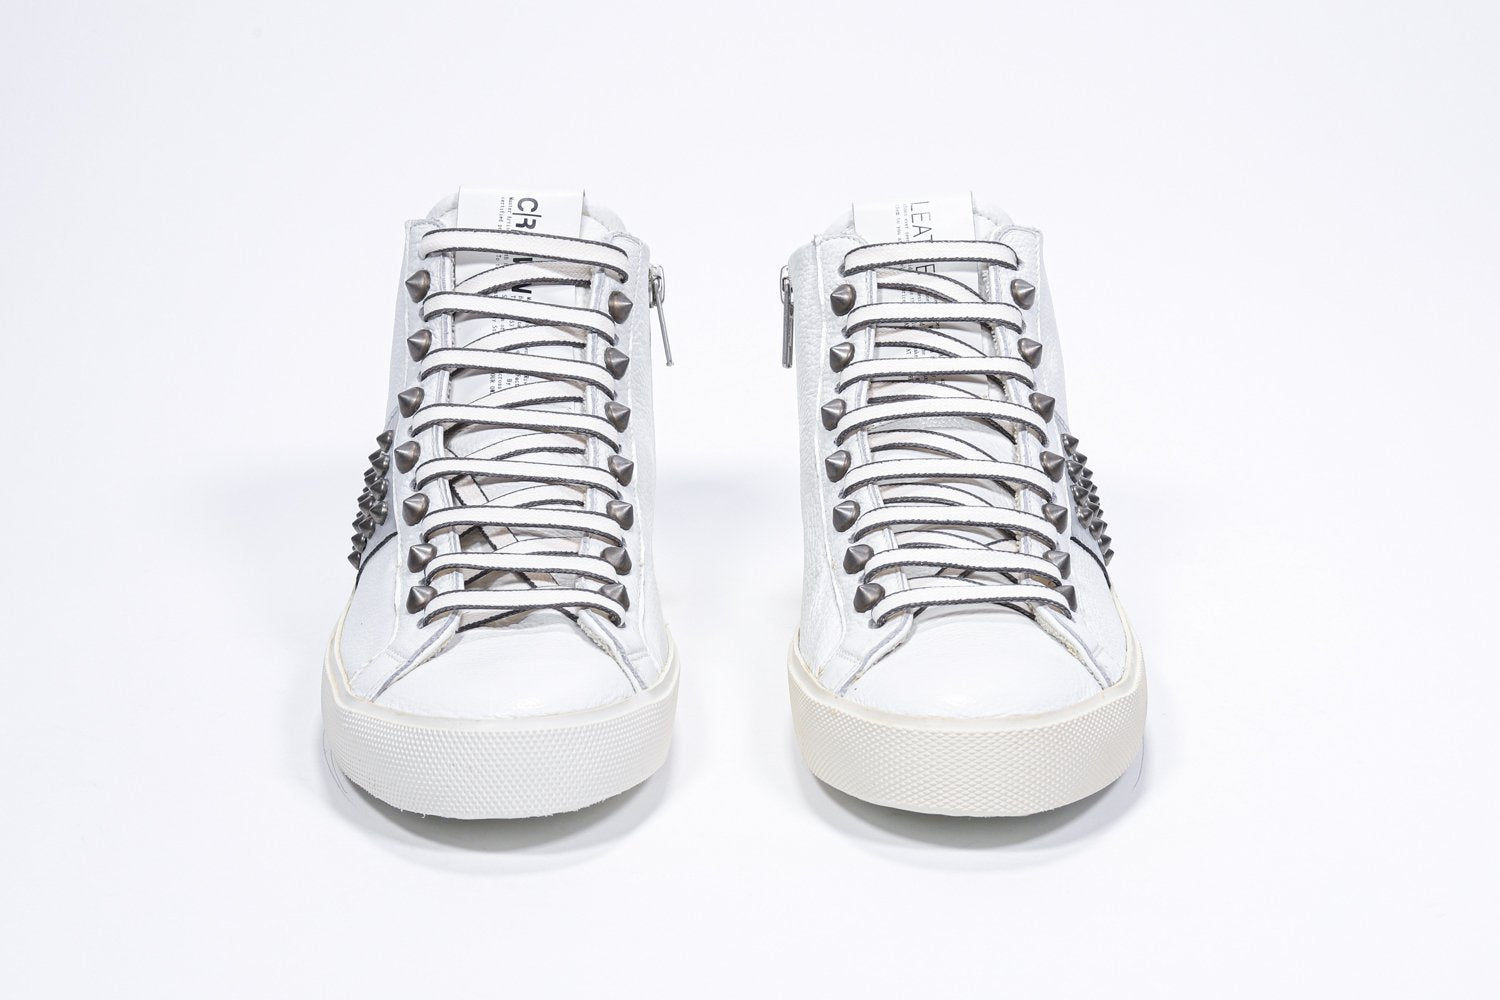 Vista frontale della mid top bianca e argento metallizzato sneaker. Tomaia in pelle con borchie, zip interna e suola in gomma vintage.